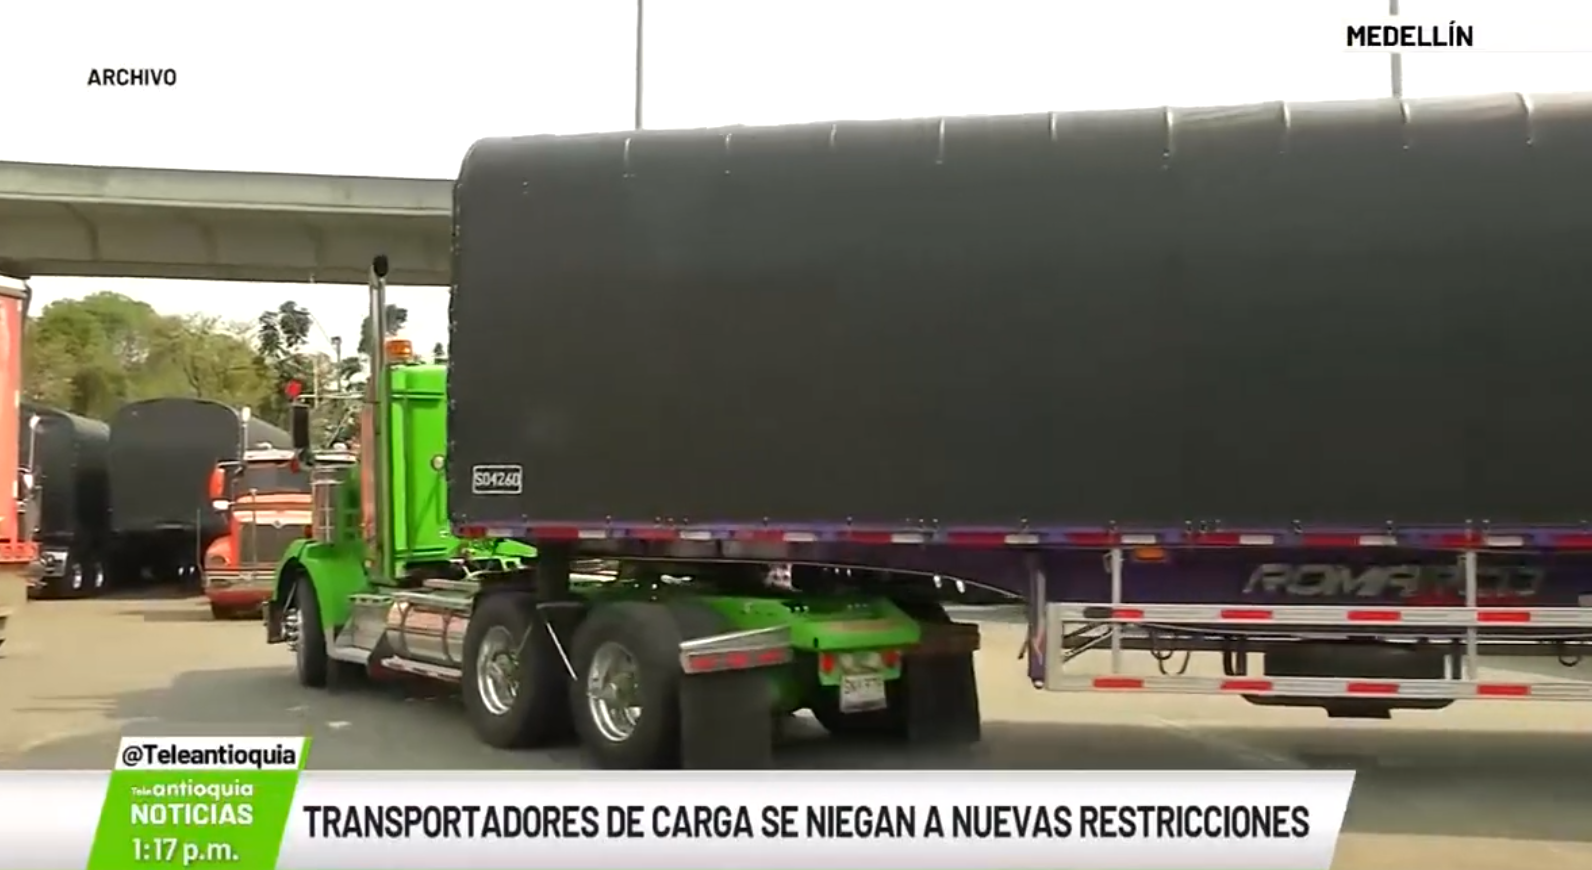 Transportadores de carga se niegan a nuevas restricciones